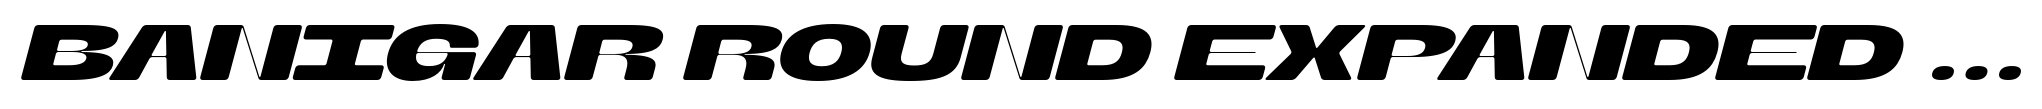 Banigar Round Expanded Bold Italic image